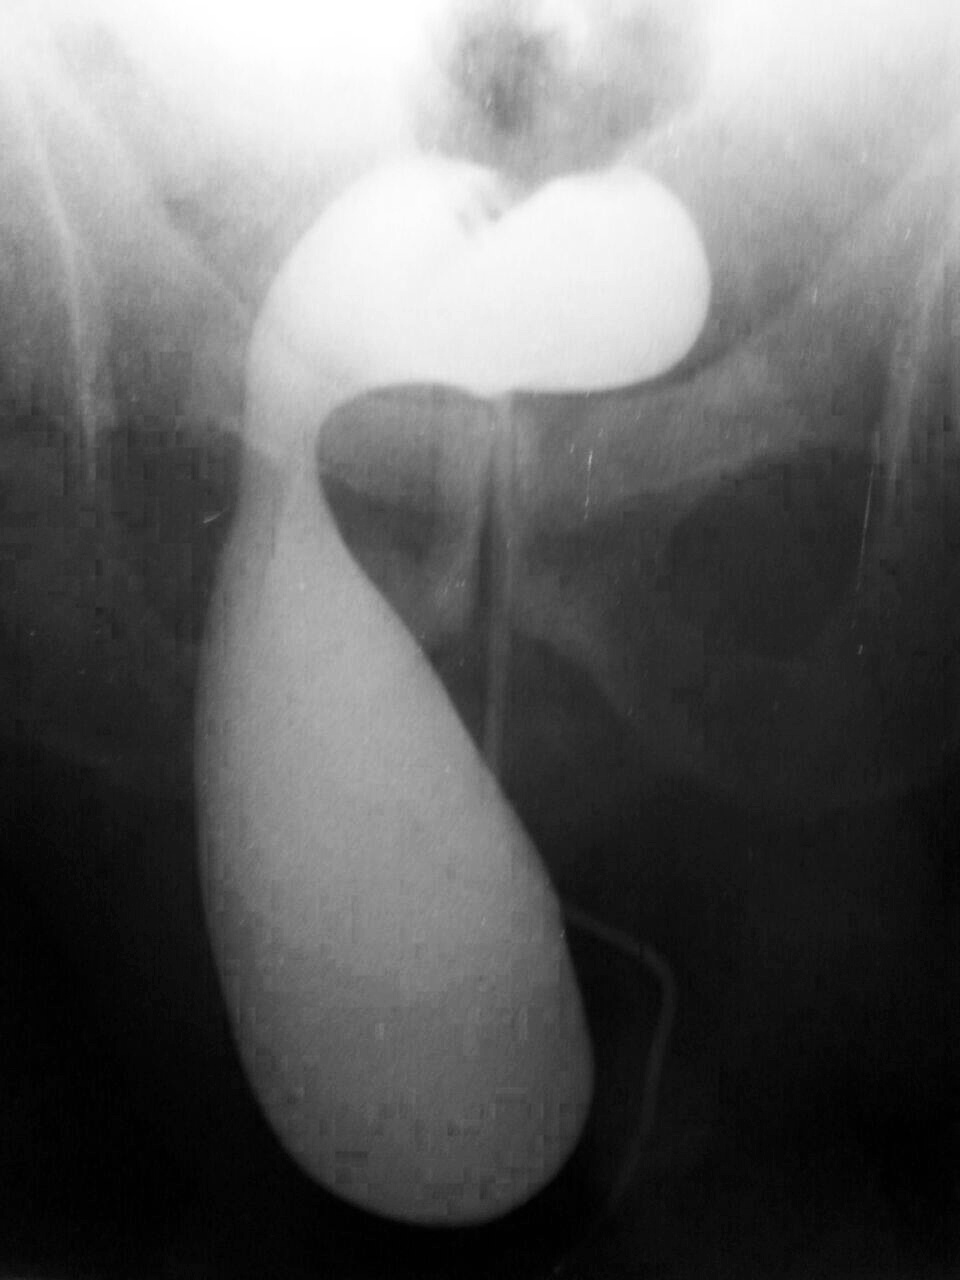 Hernia inguinal por deslizamiento, conteniendo vejiga, identificada en uretrocistografía